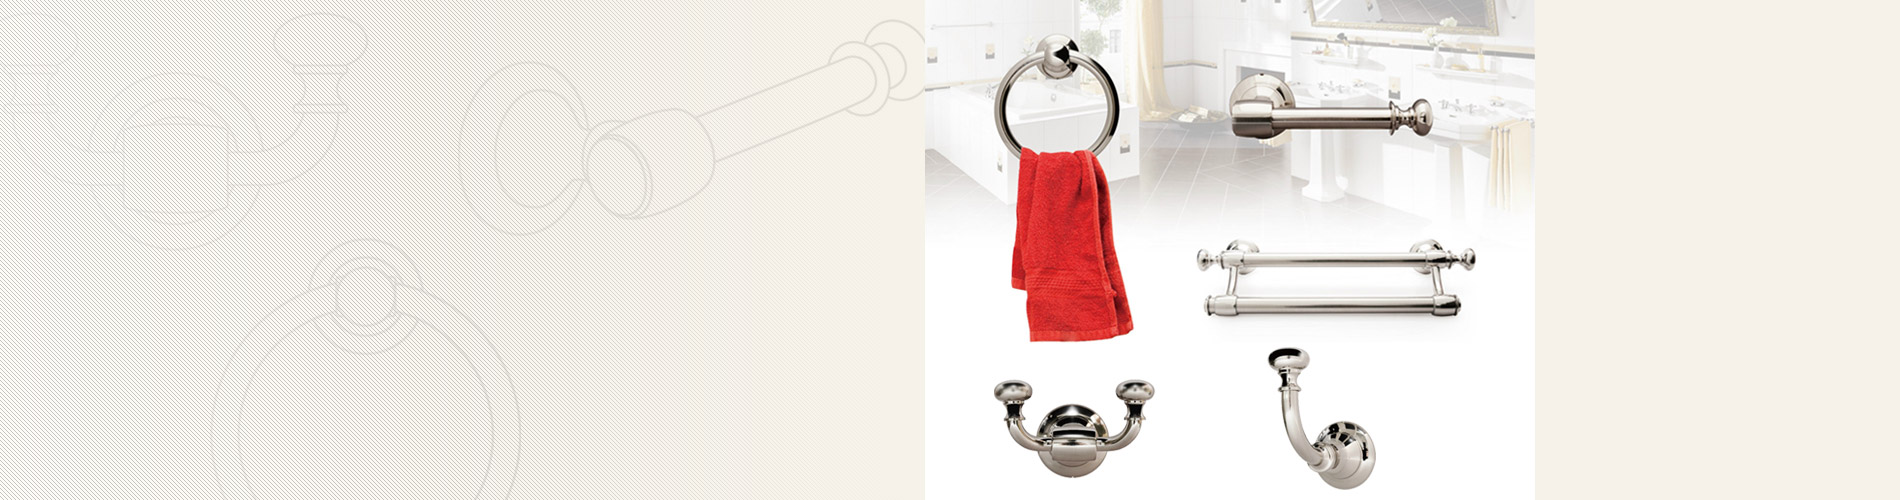 Оборудование для ванной Наше оборудование для ванной комнаты включает в себя одинарную/двойную вешалку для полотенец, кольцо для полотенец, держатель для ткани и крючки для одежды.